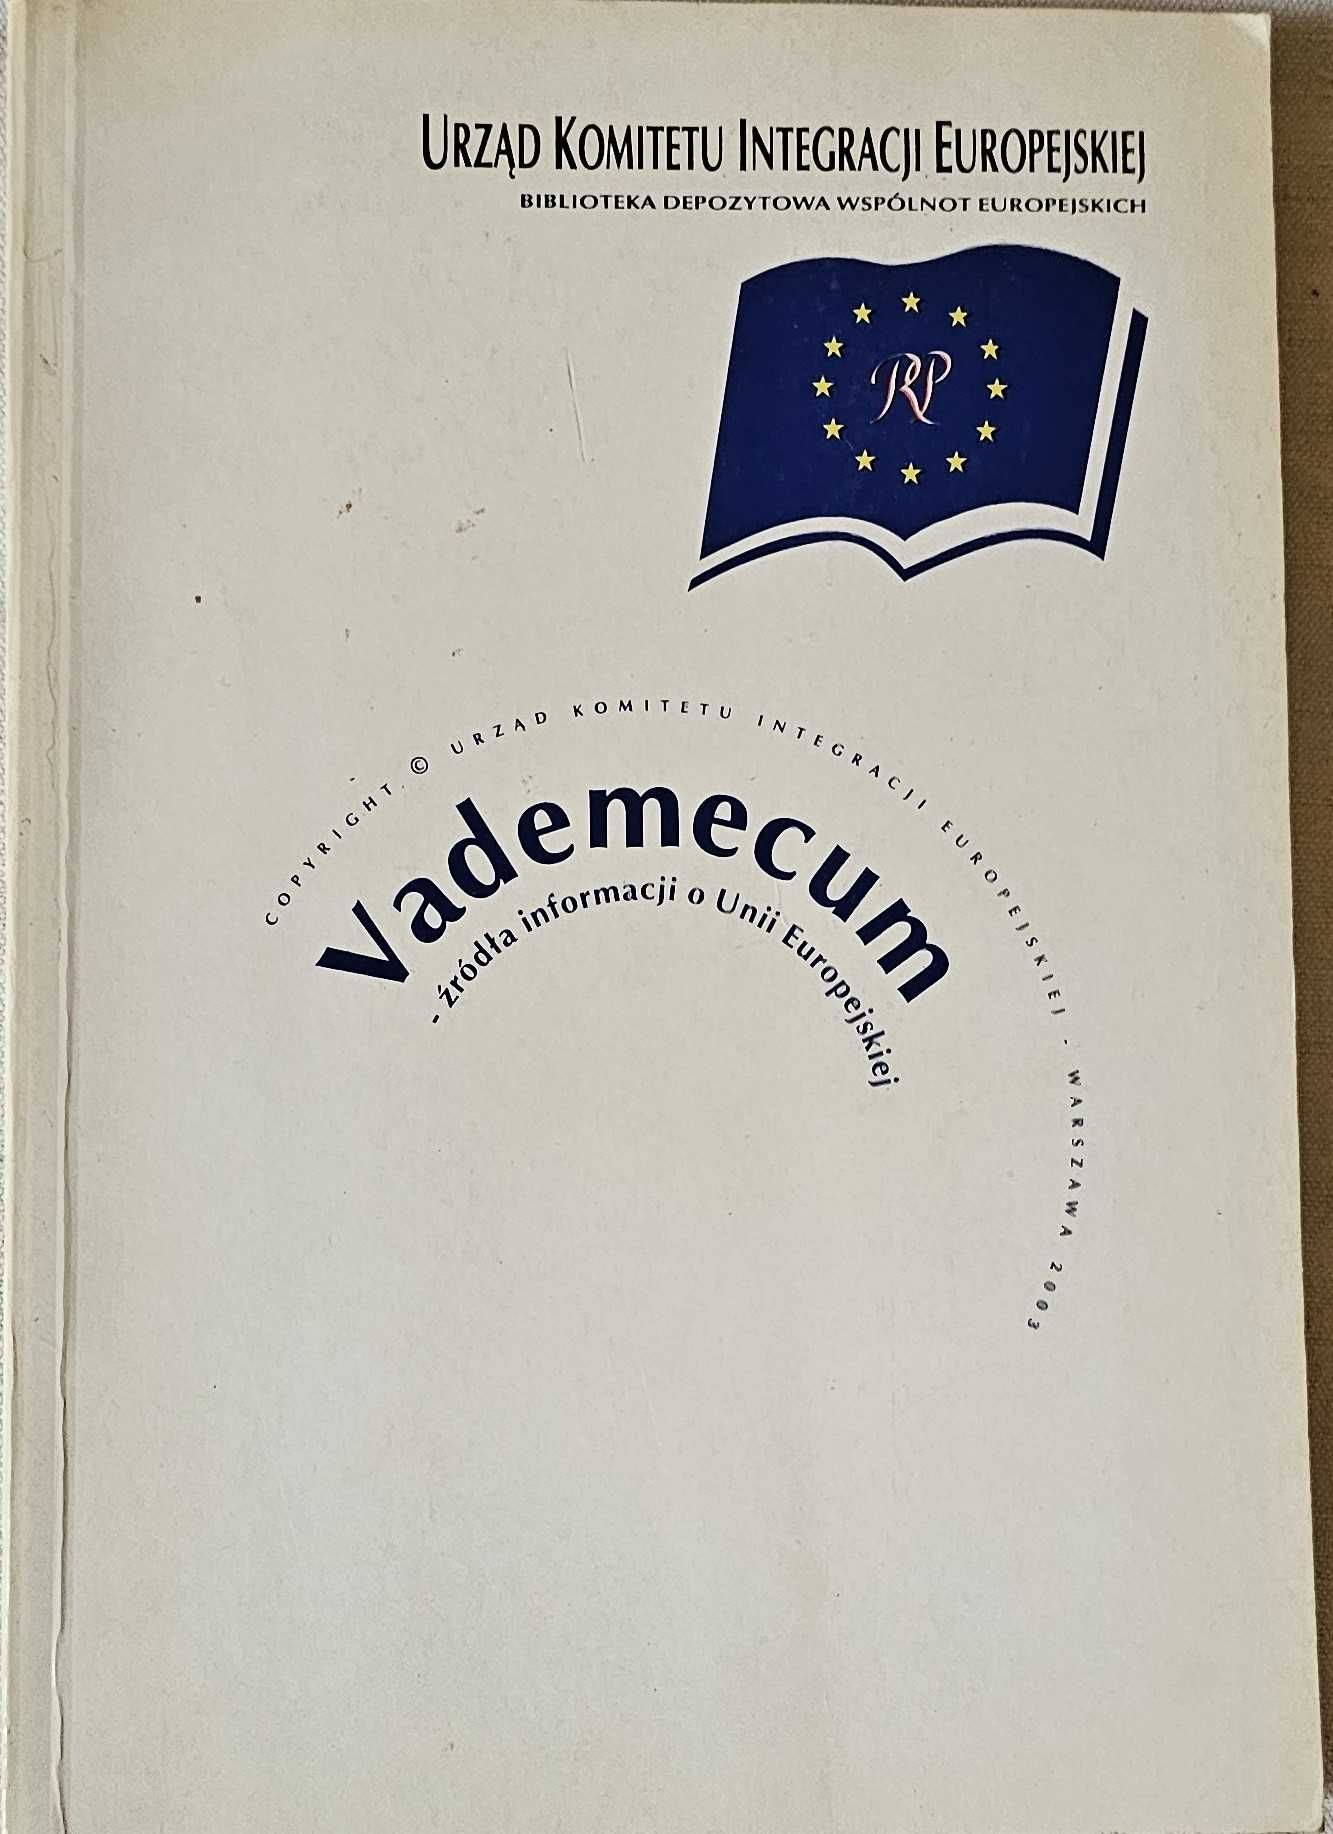 Vademecum - źródła informacji o Unii Europejskiej